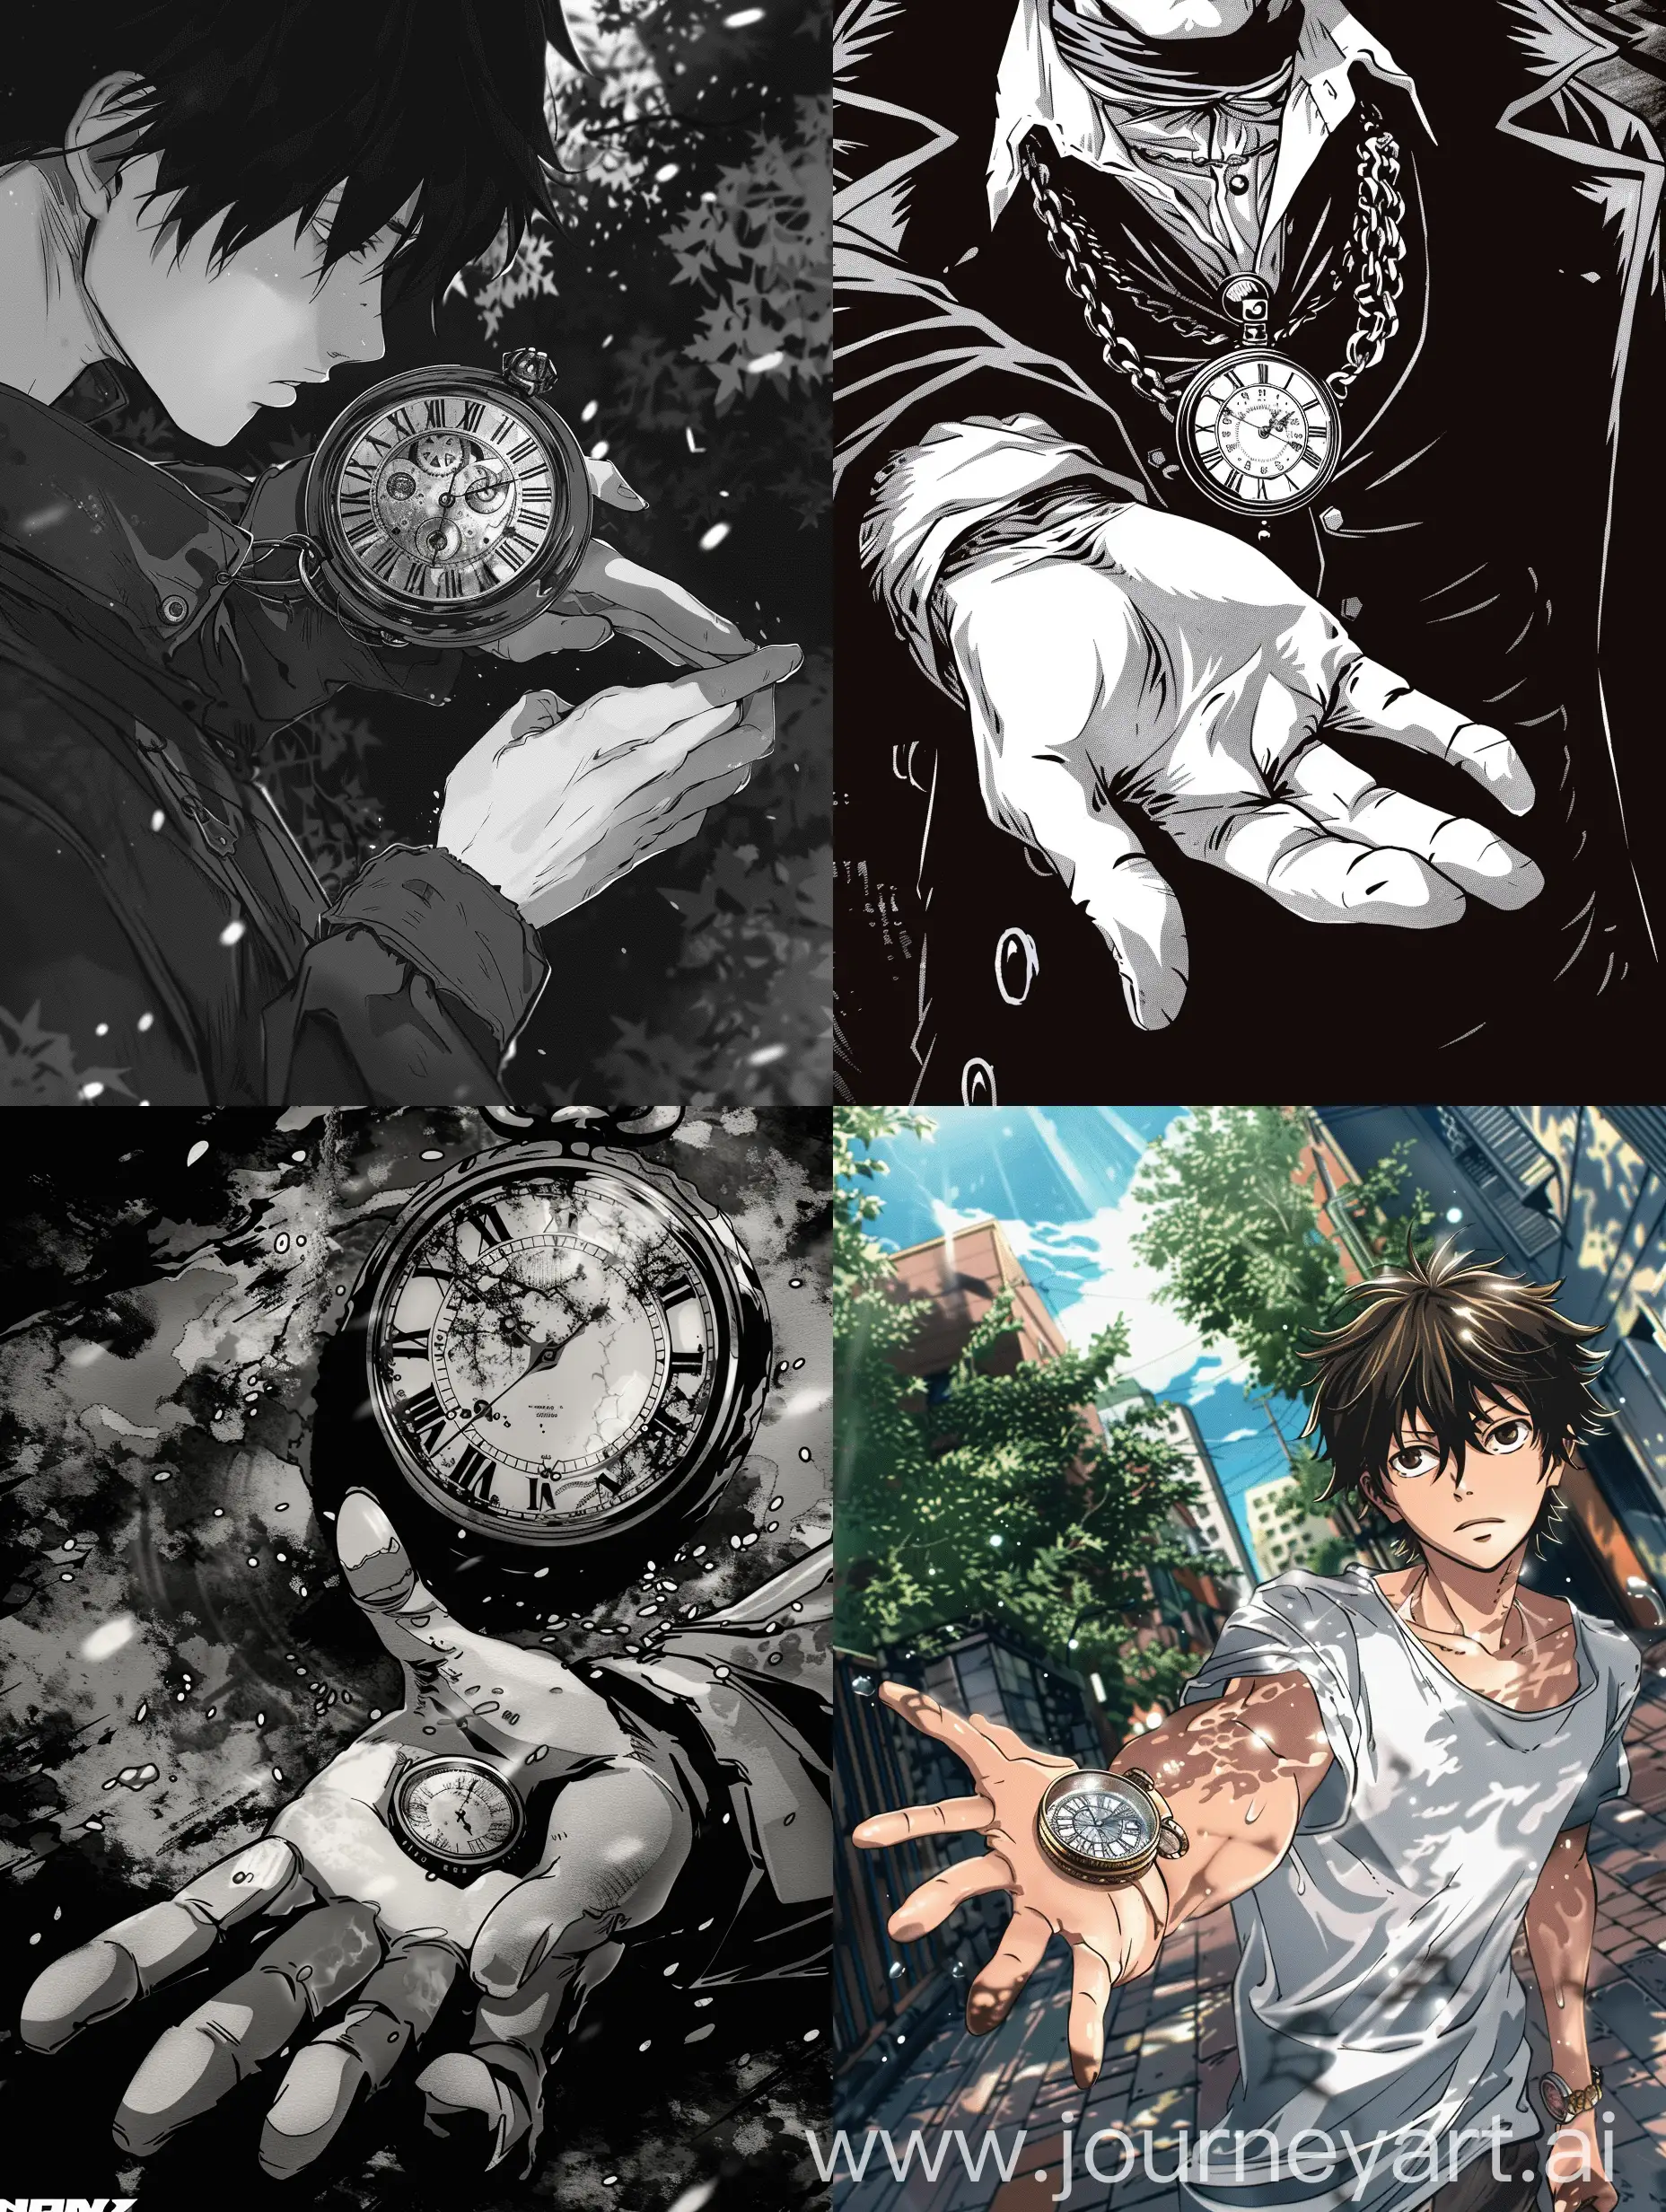 Manga-Style-Illustration-of-a-Guy-Holding-a-Time-Amulet